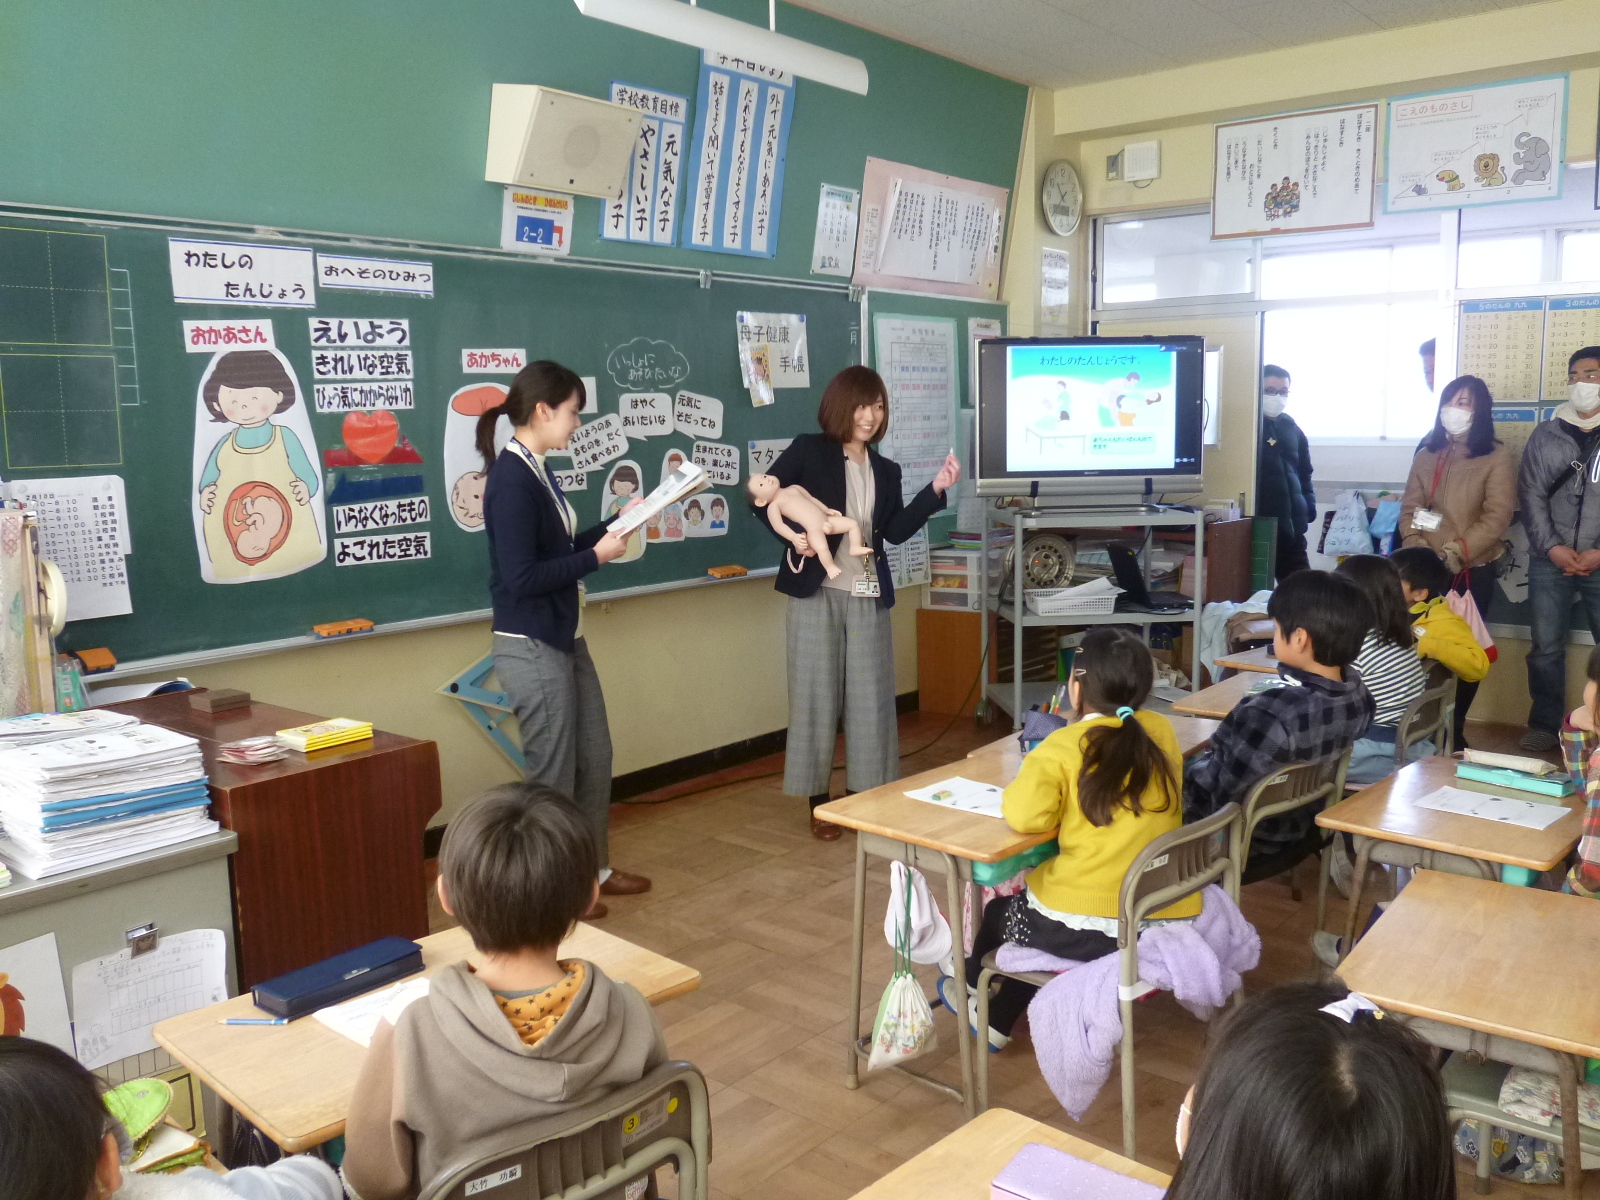 黒板の前に立って説明している先生と赤ちゃんの人形を抱いている地区担当保健師、授業を受けている生徒たちの写真